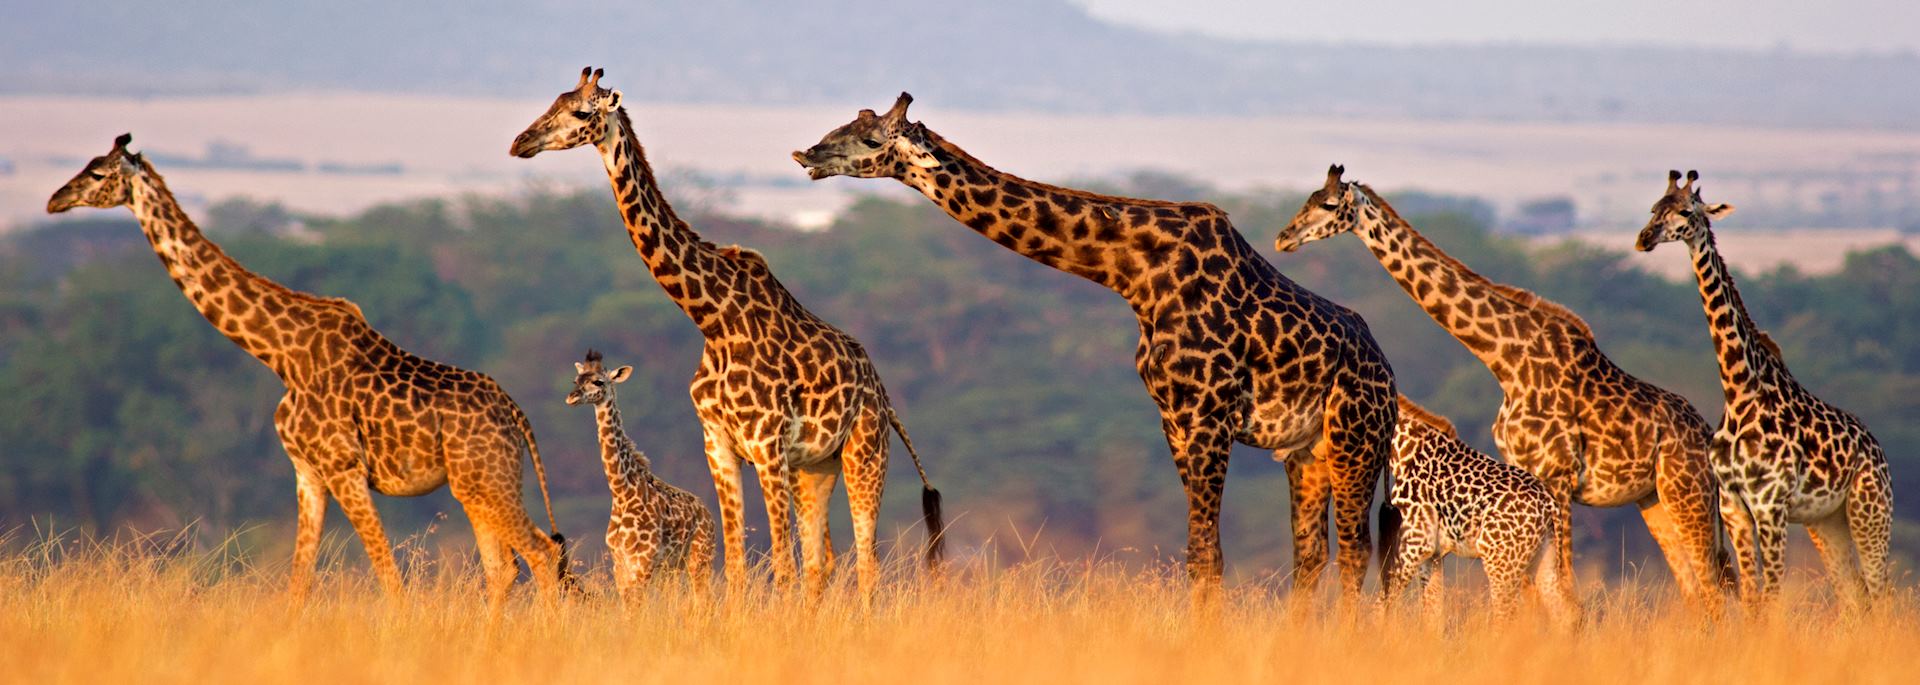 Giraffe in the Masai Mara, Kenya